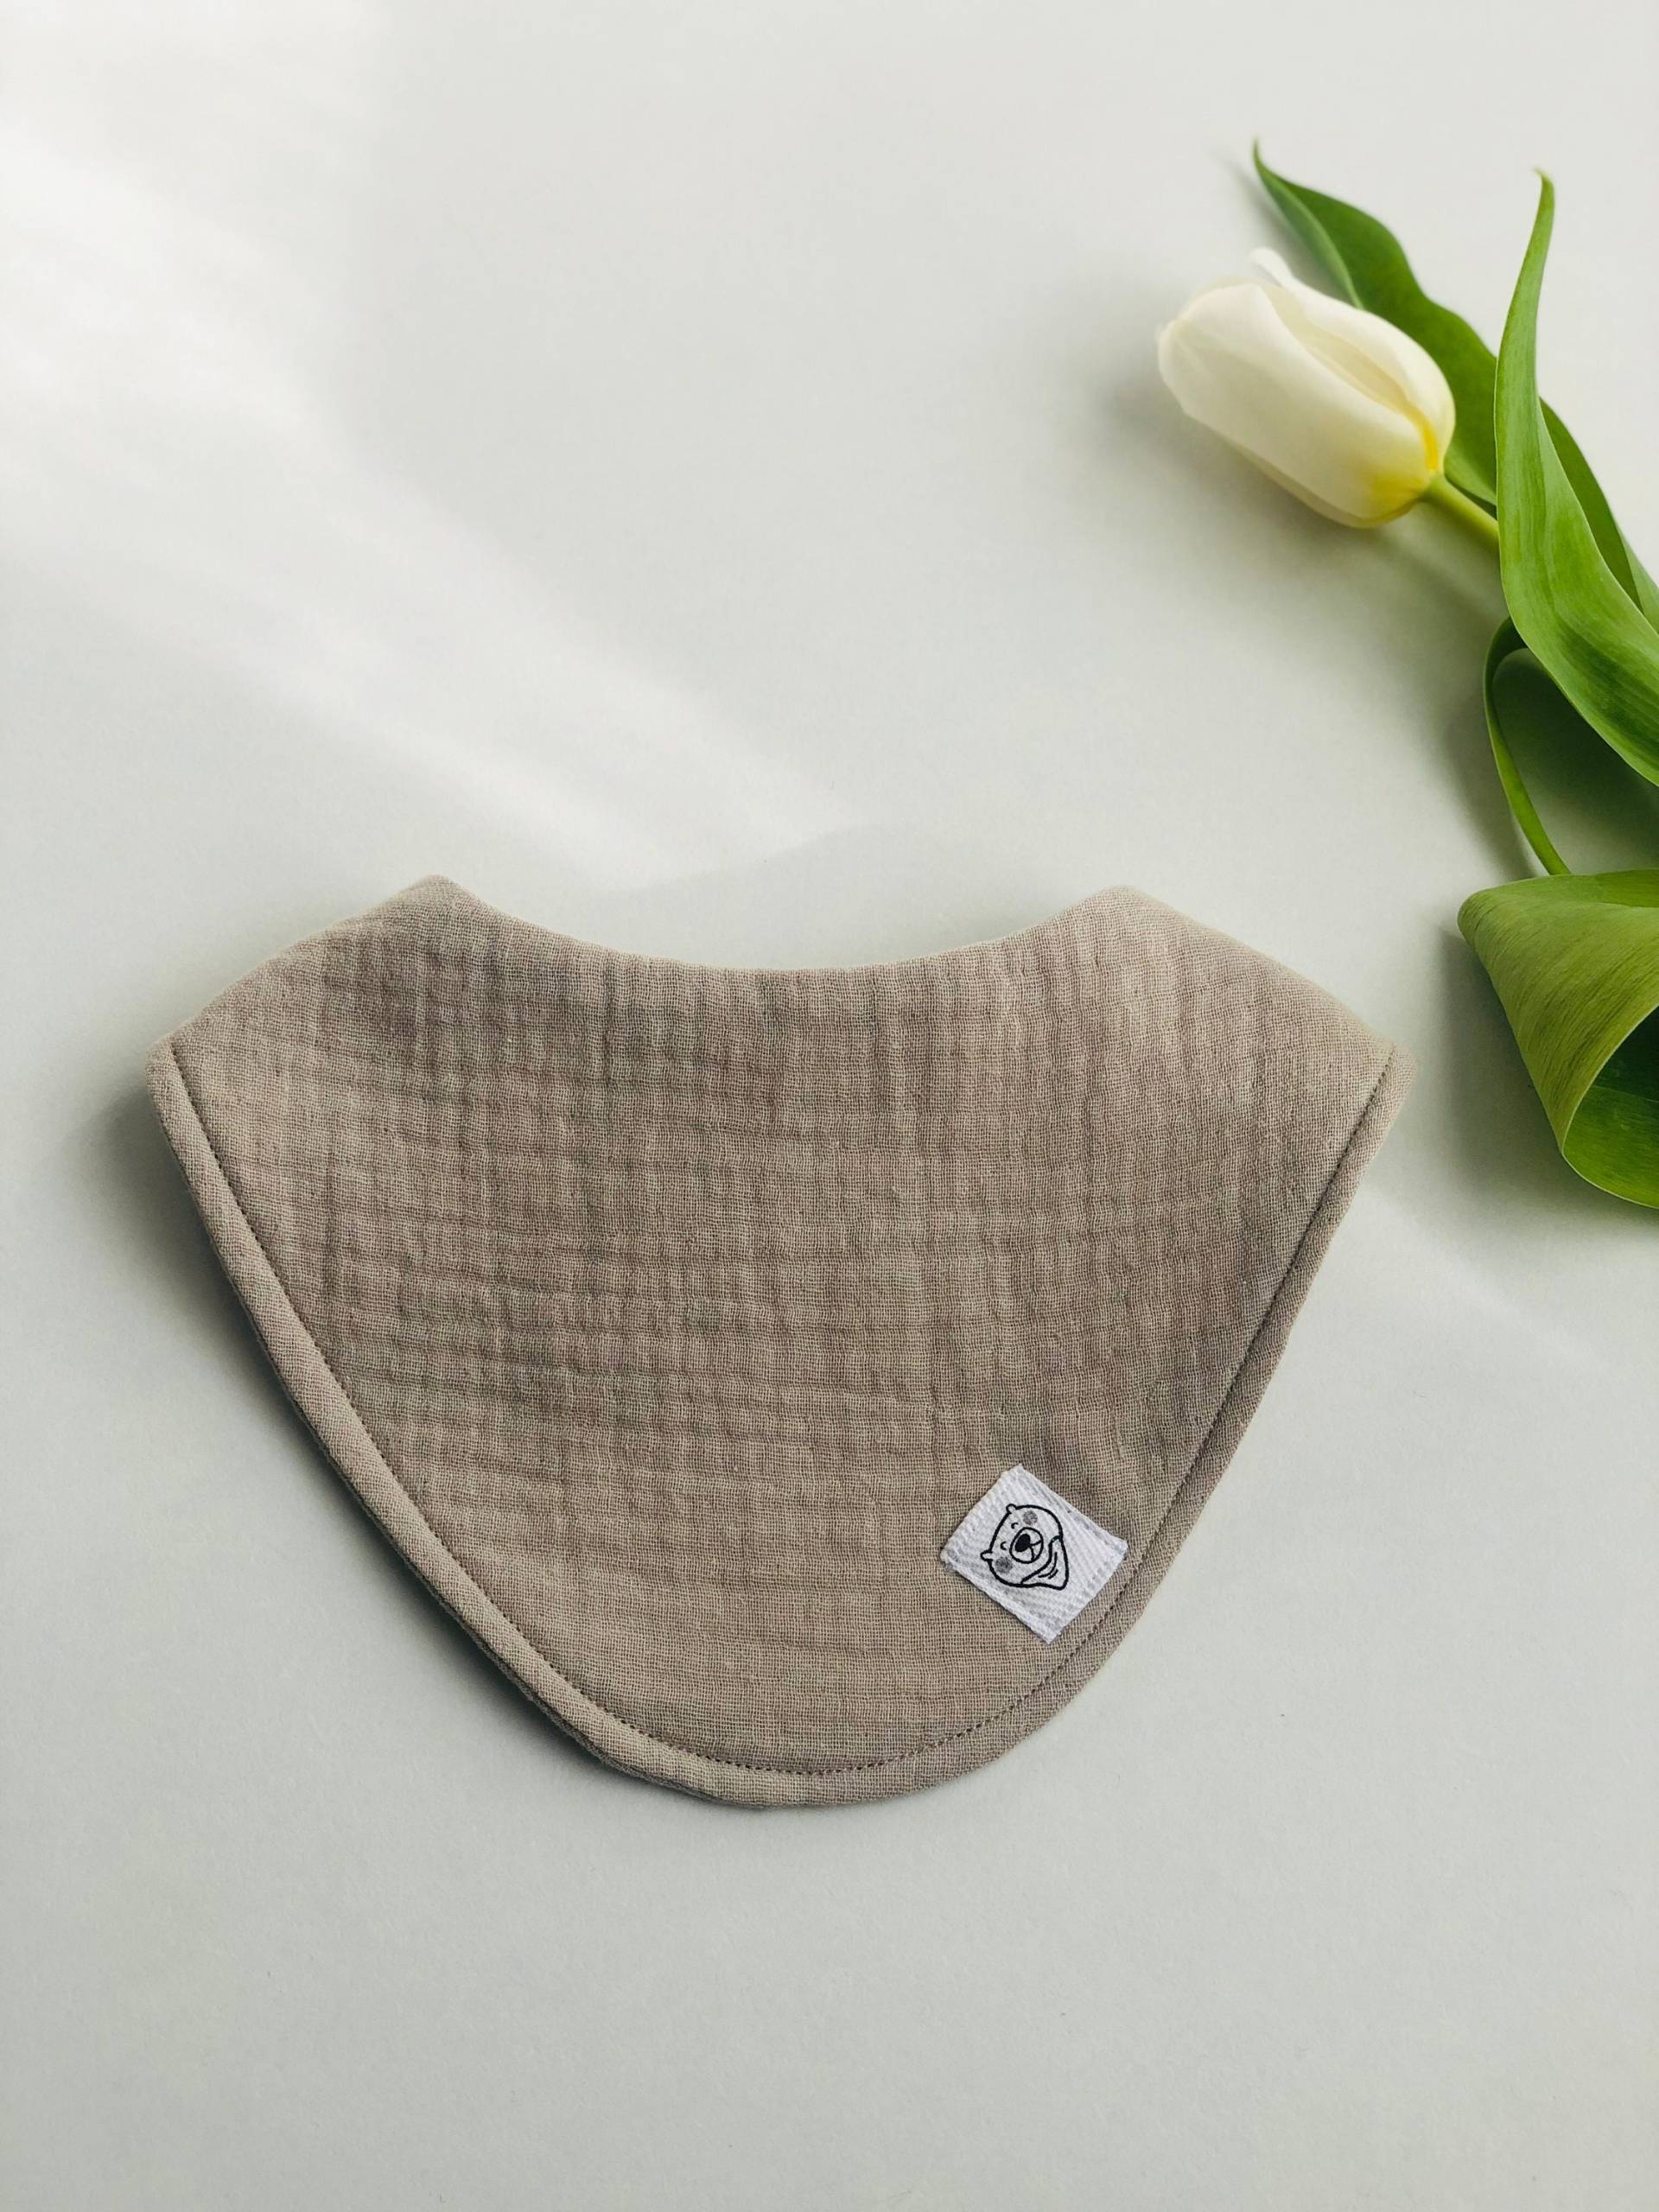 Minimalist Neutral Ton Lätzchen Musselin Bandana Baby Geschenk Aus Reiner Baumwolle von BabyMoller